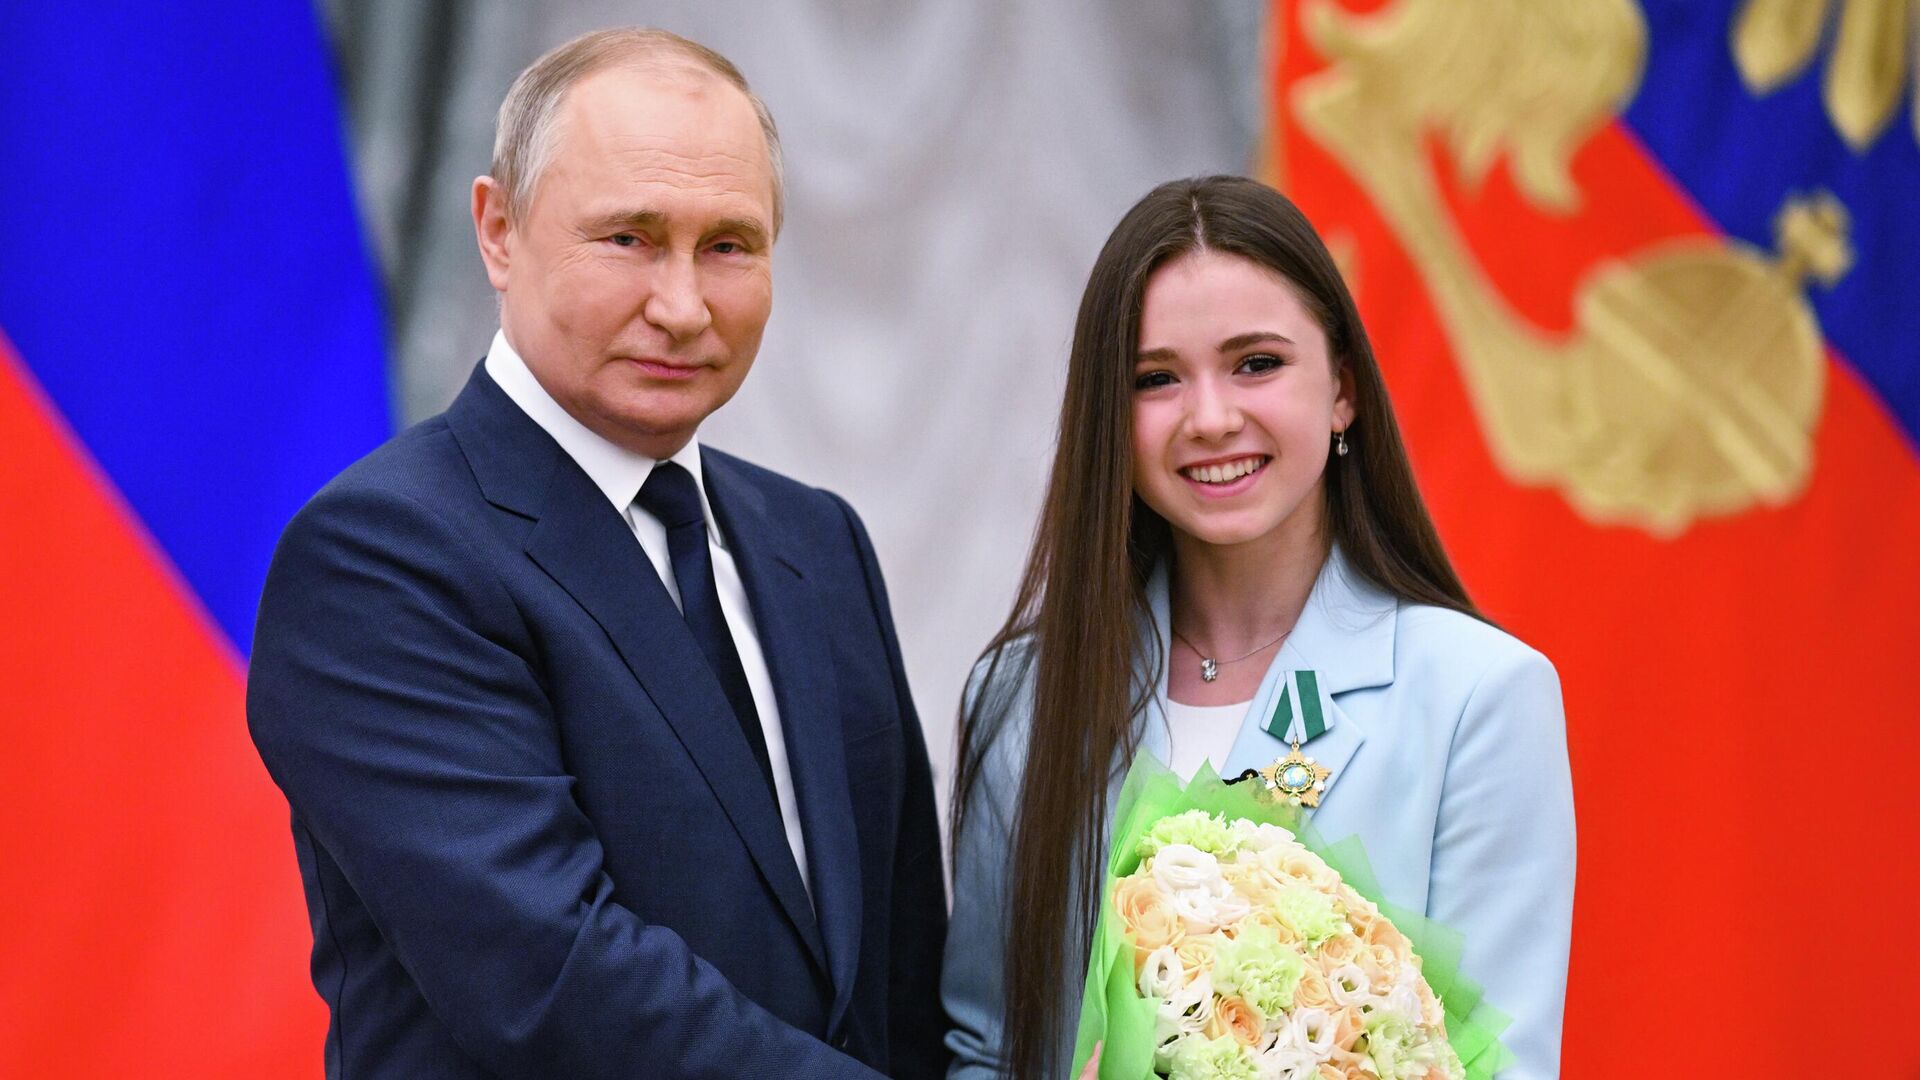 Путин фигуристке Валиевой: главное - не обращать внимания на критику и добиваться успехов